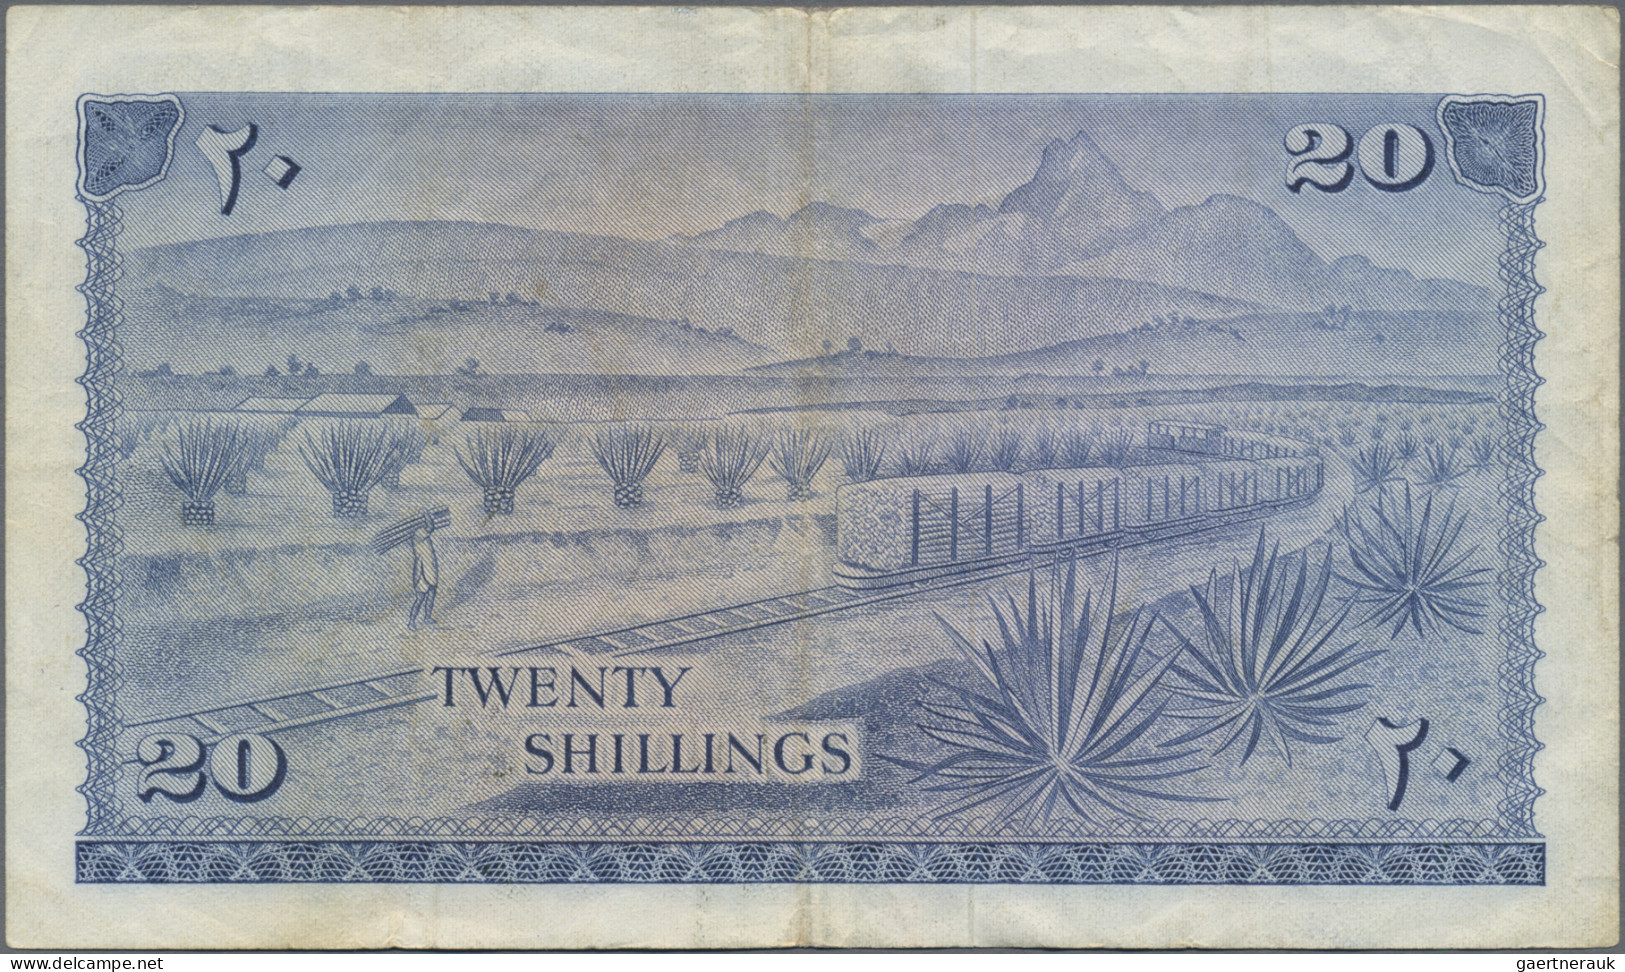 Kenya: Central Bank Of Kenya, Lot With 5 Banknotes, Series 1966/68, With 5, 10, - Kenya